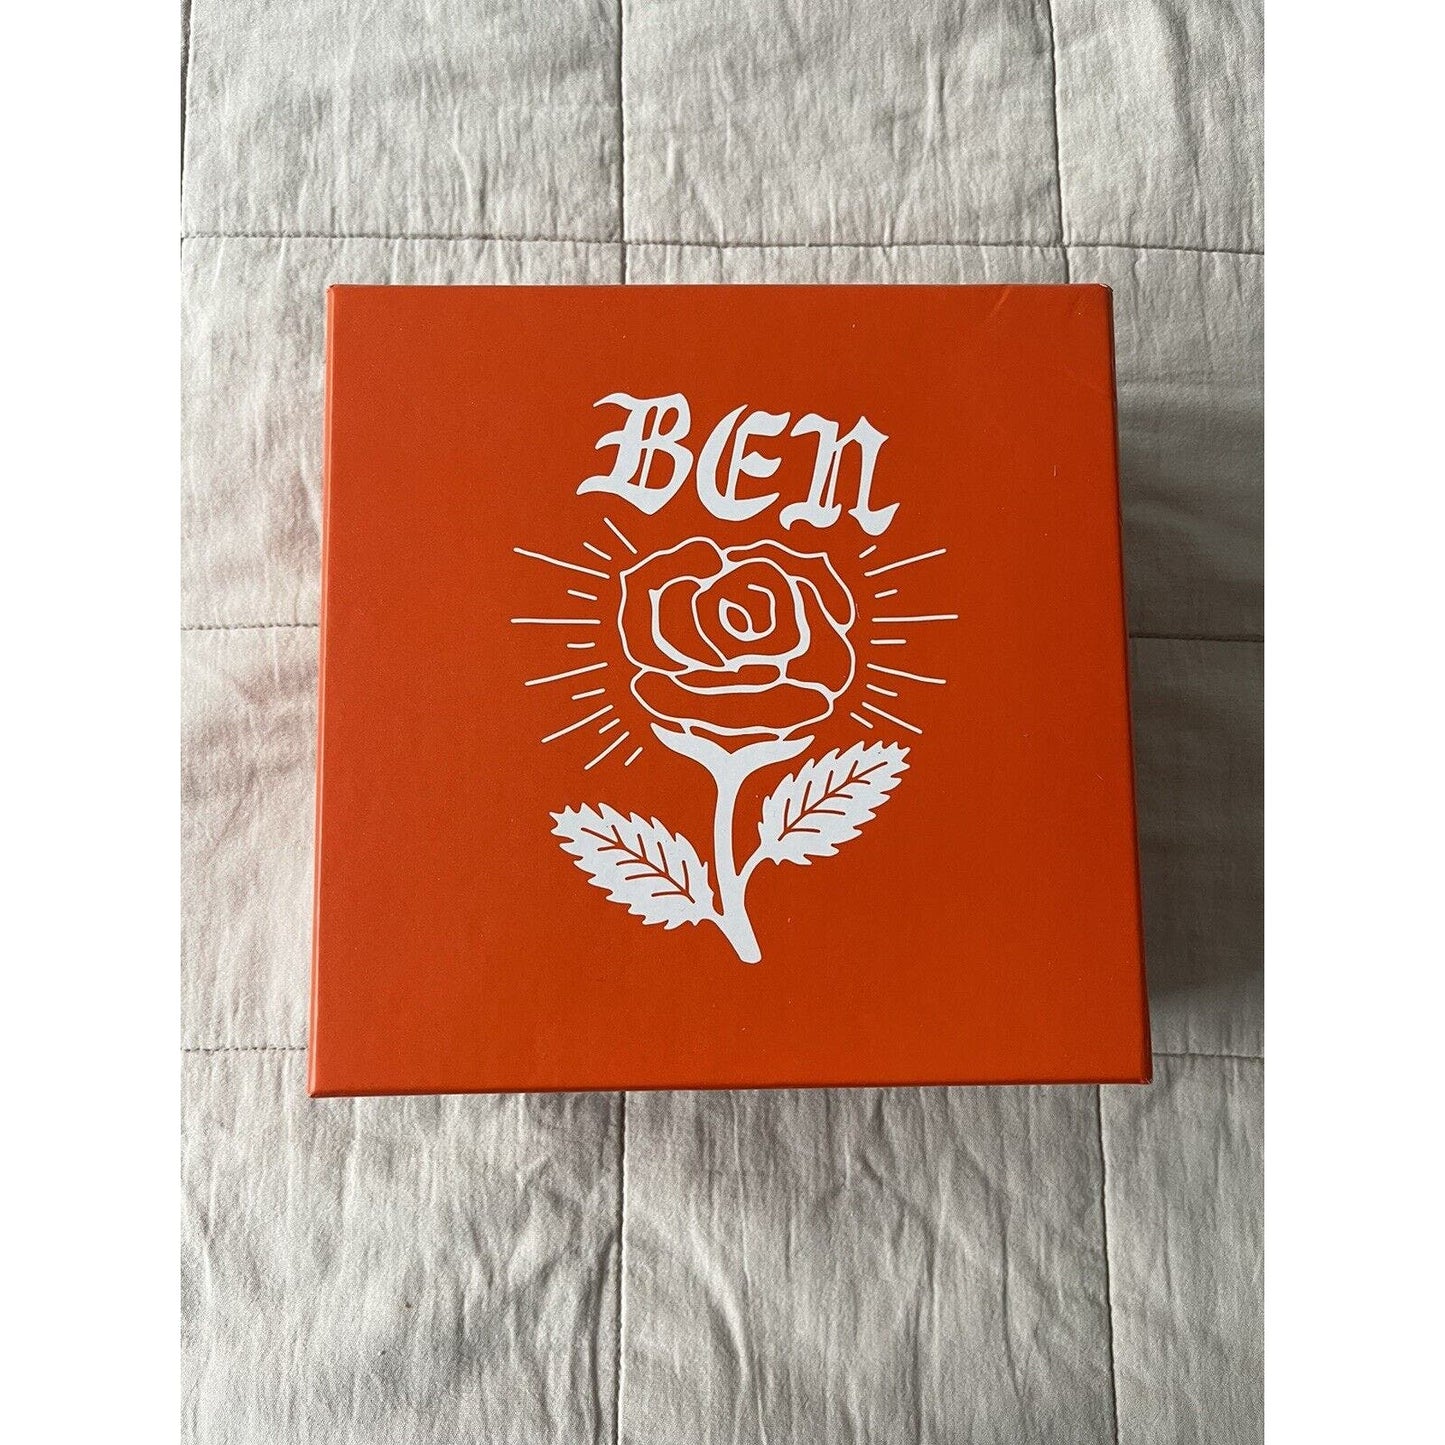 BEN MACKLEMORE SIGNED CD Bundle: Sealed CD, Signed Art Card, Black Tee (L)